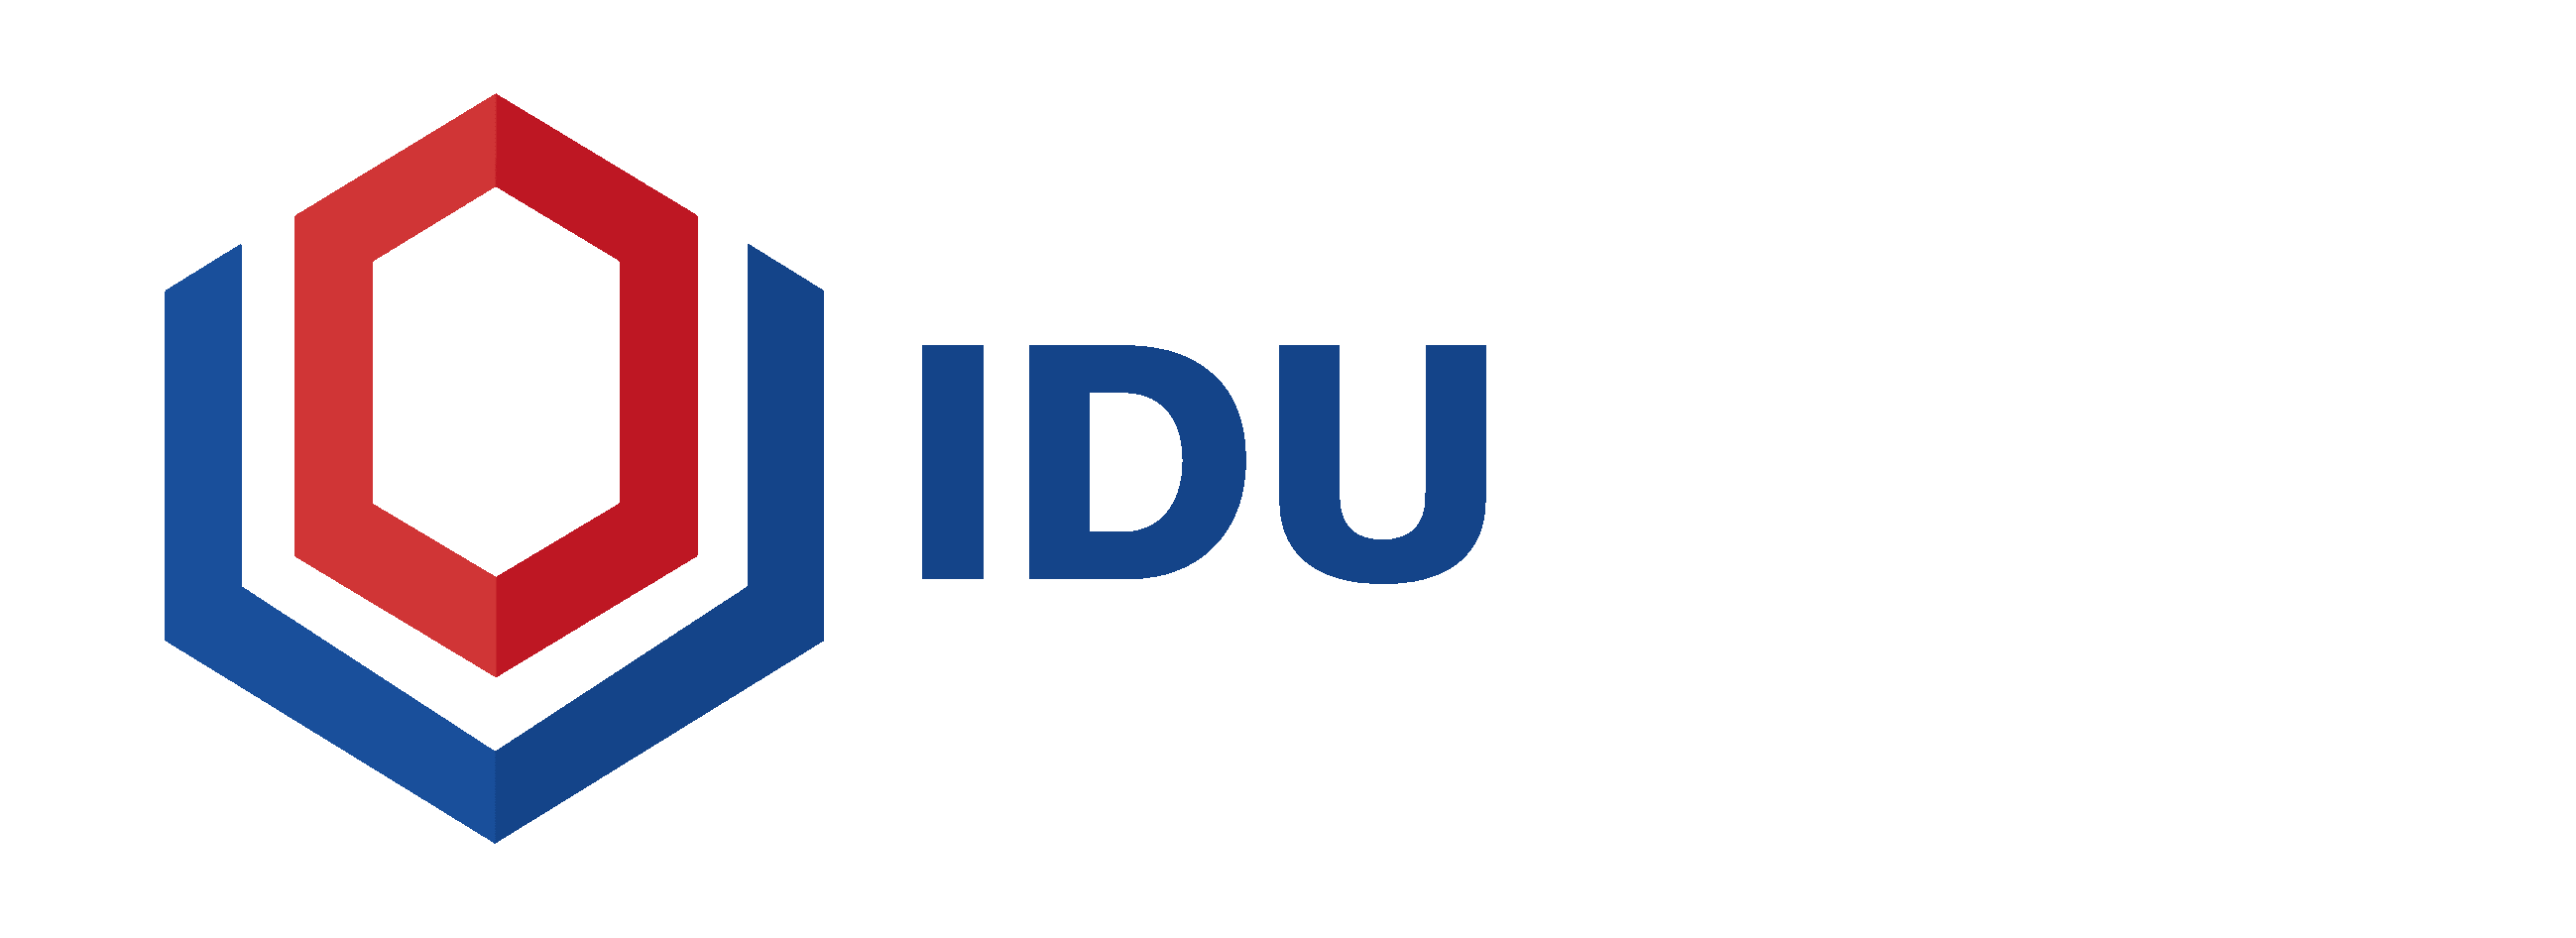 Contact Us | IDU